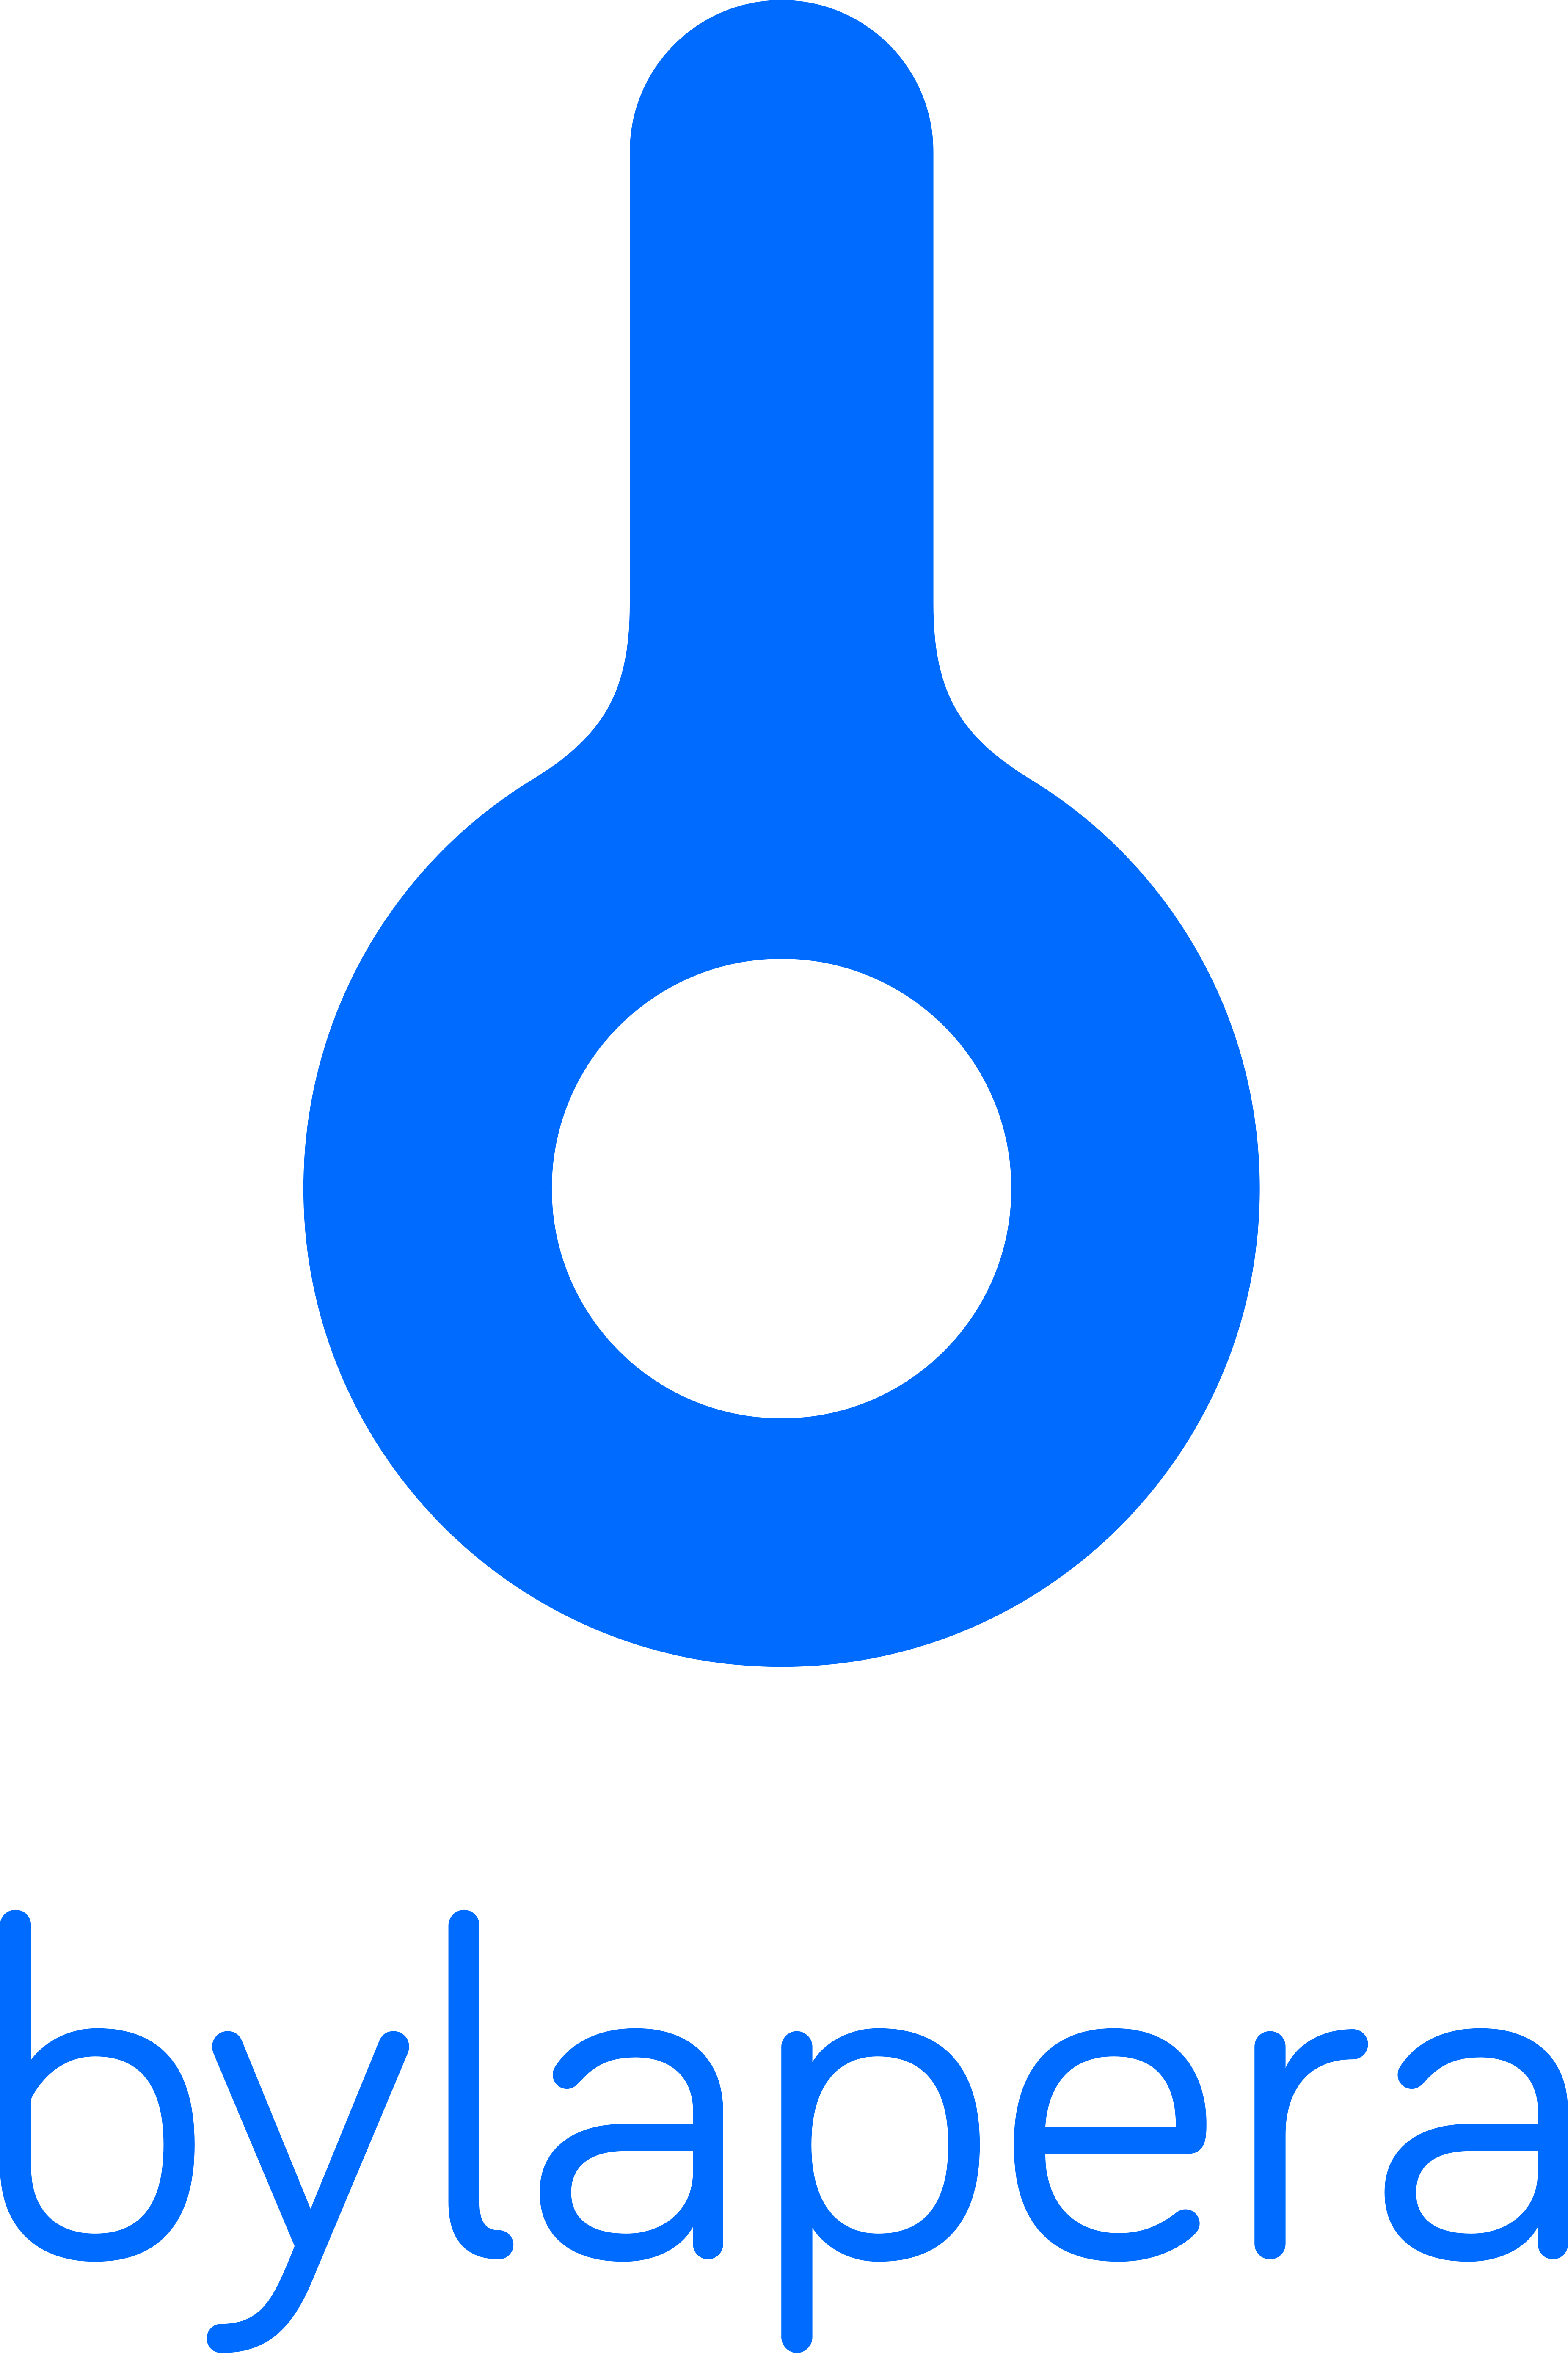 Bylapera logo